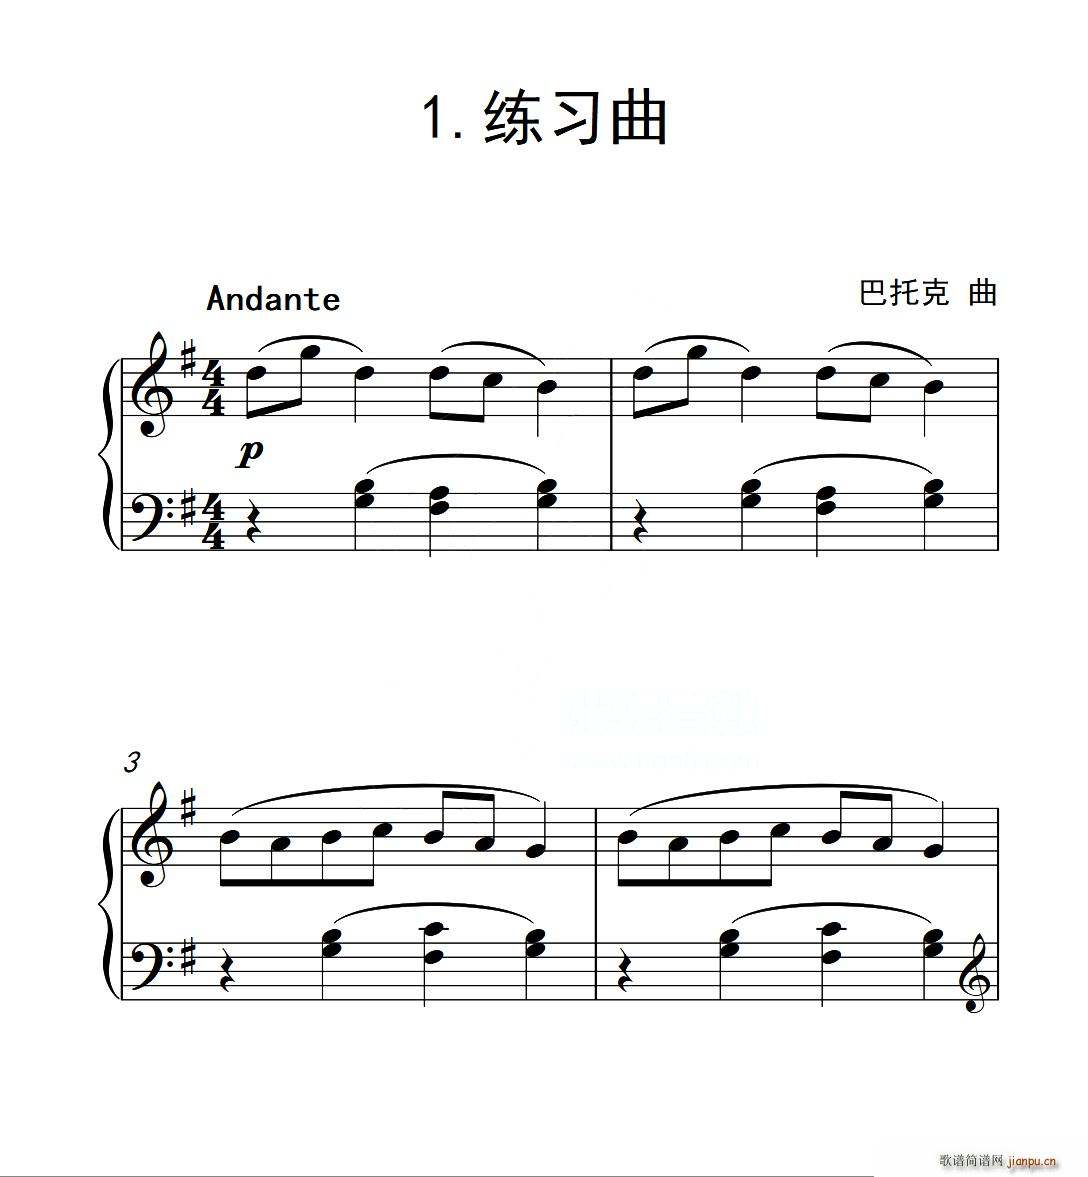 中国音乐学院钢琴考级曲目要求几首(中国音乐学院钢琴考级规定曲目和自选曲目)